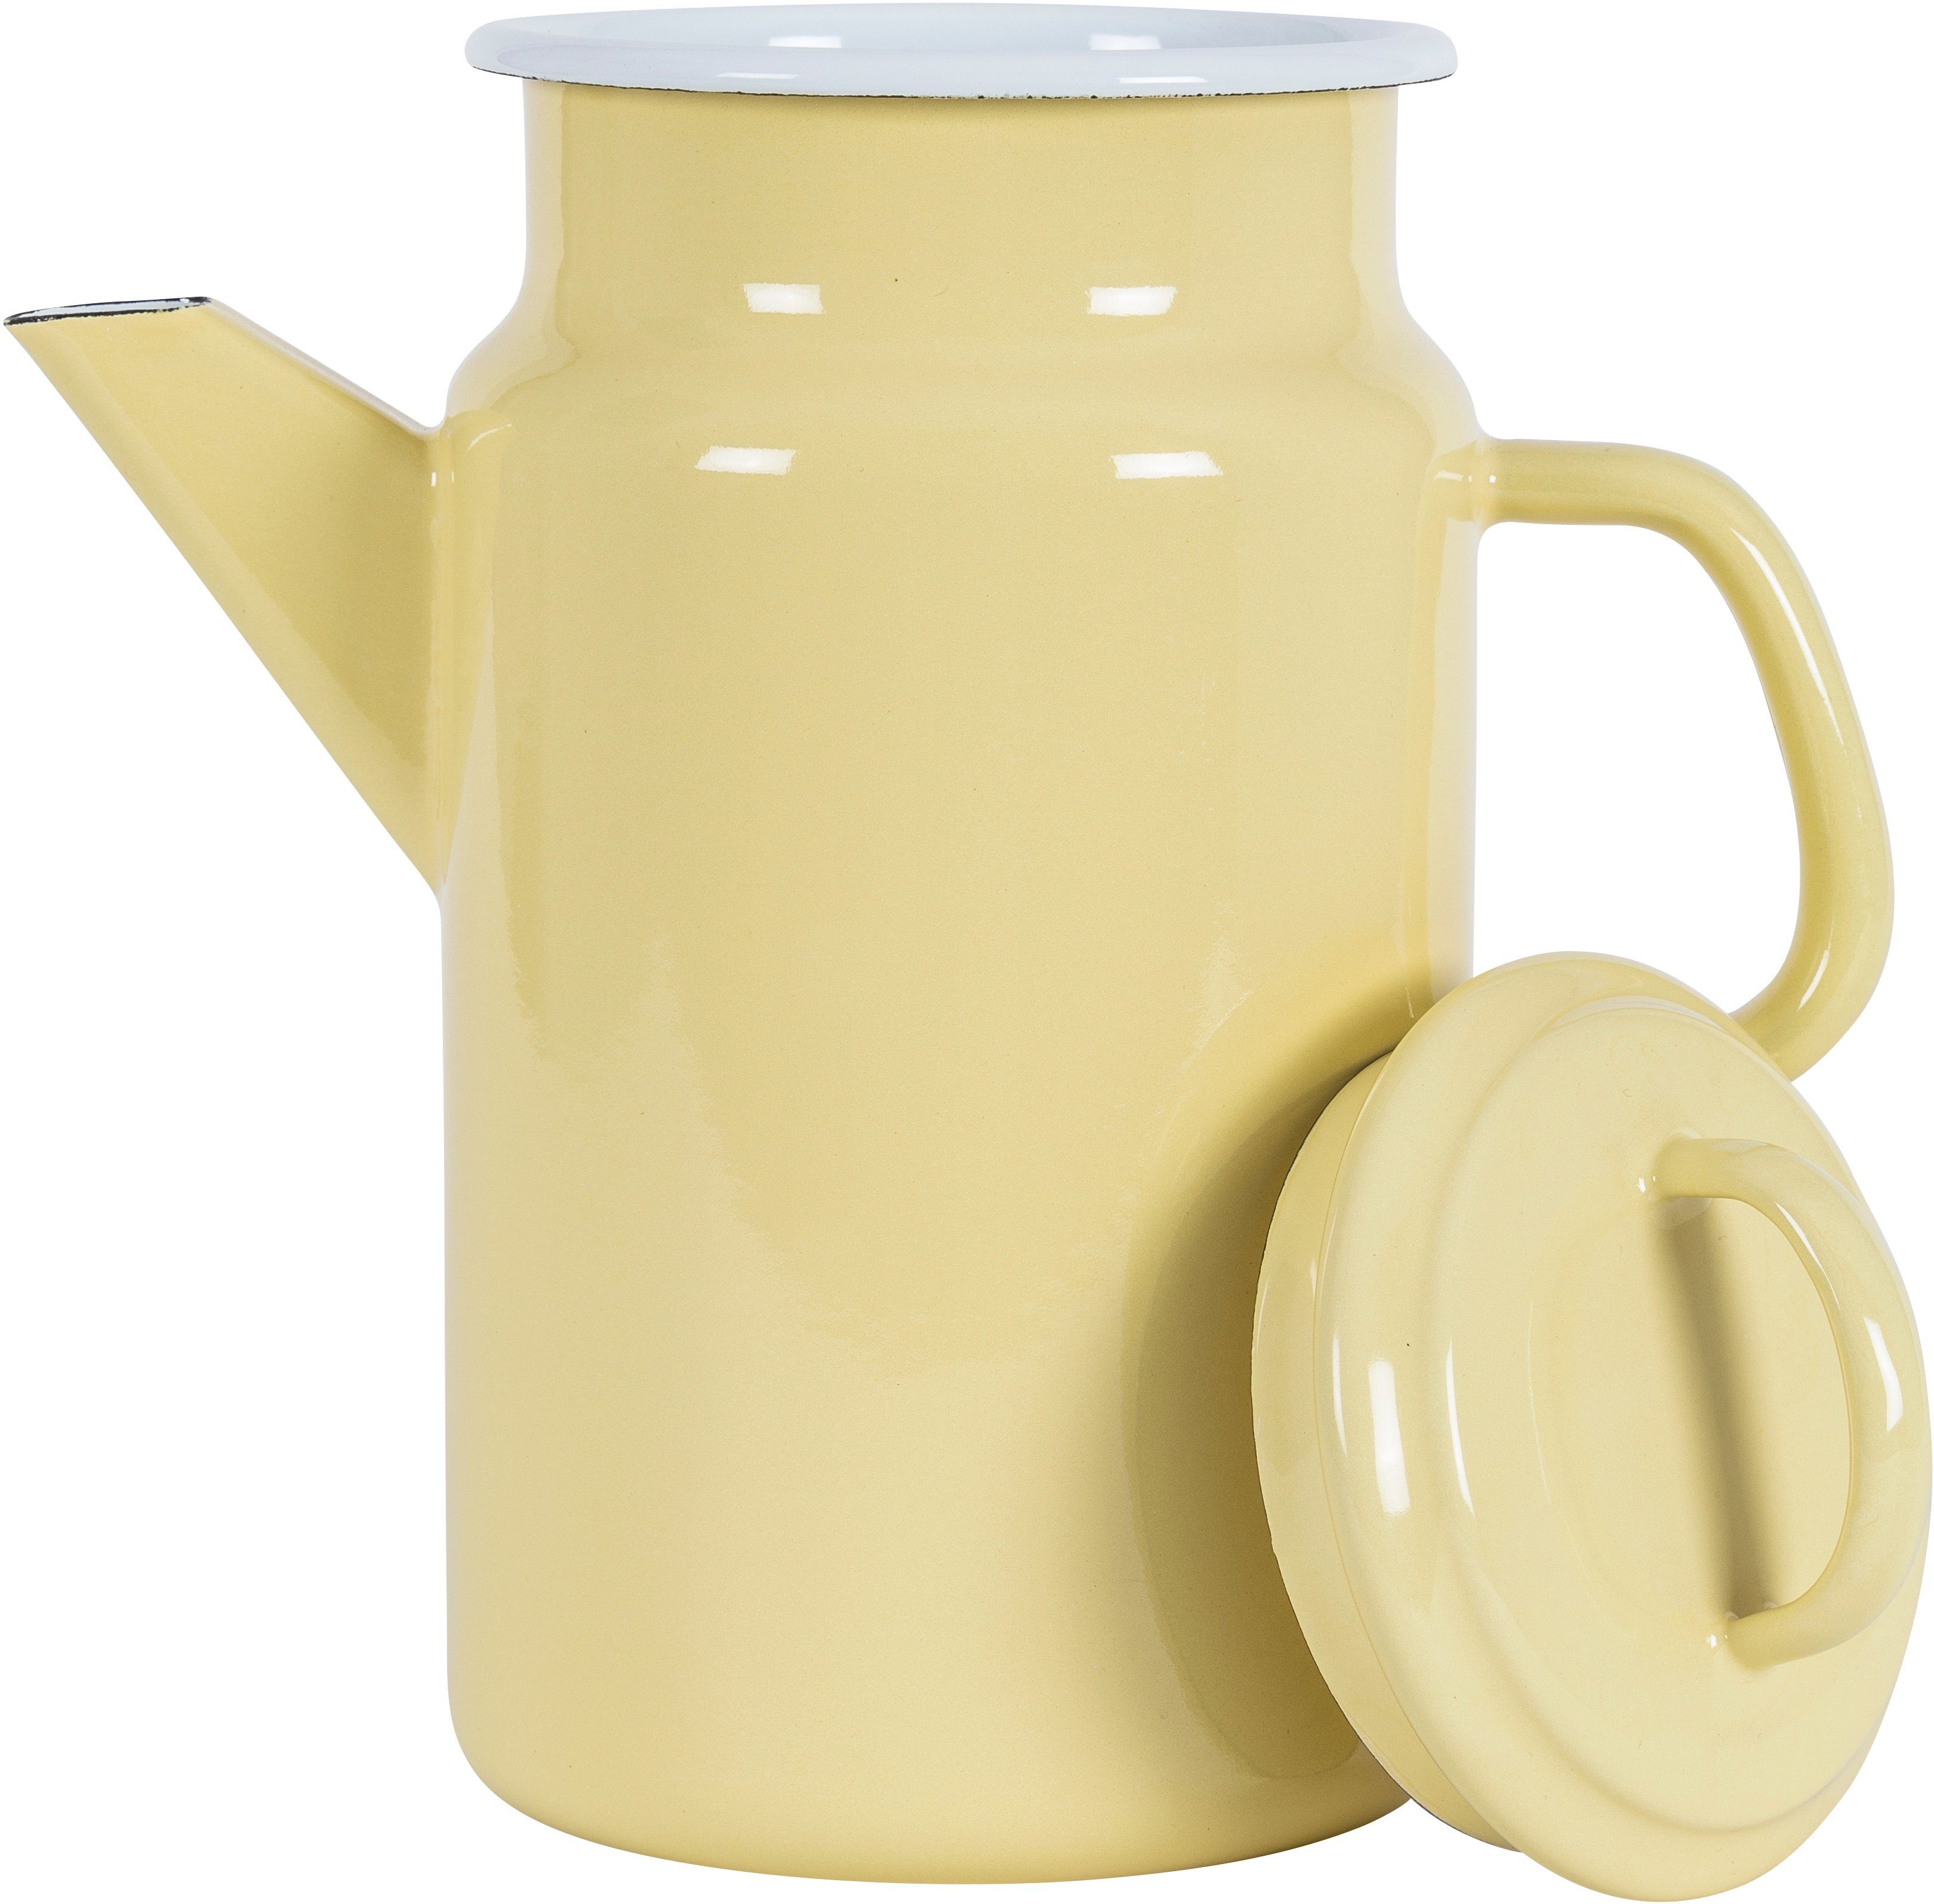 2 in Emaille, Nachhaltigkeit KOCKUMS® einer und Teekanne vereint Retro-Design Teekanne Jernverk, gelb l,